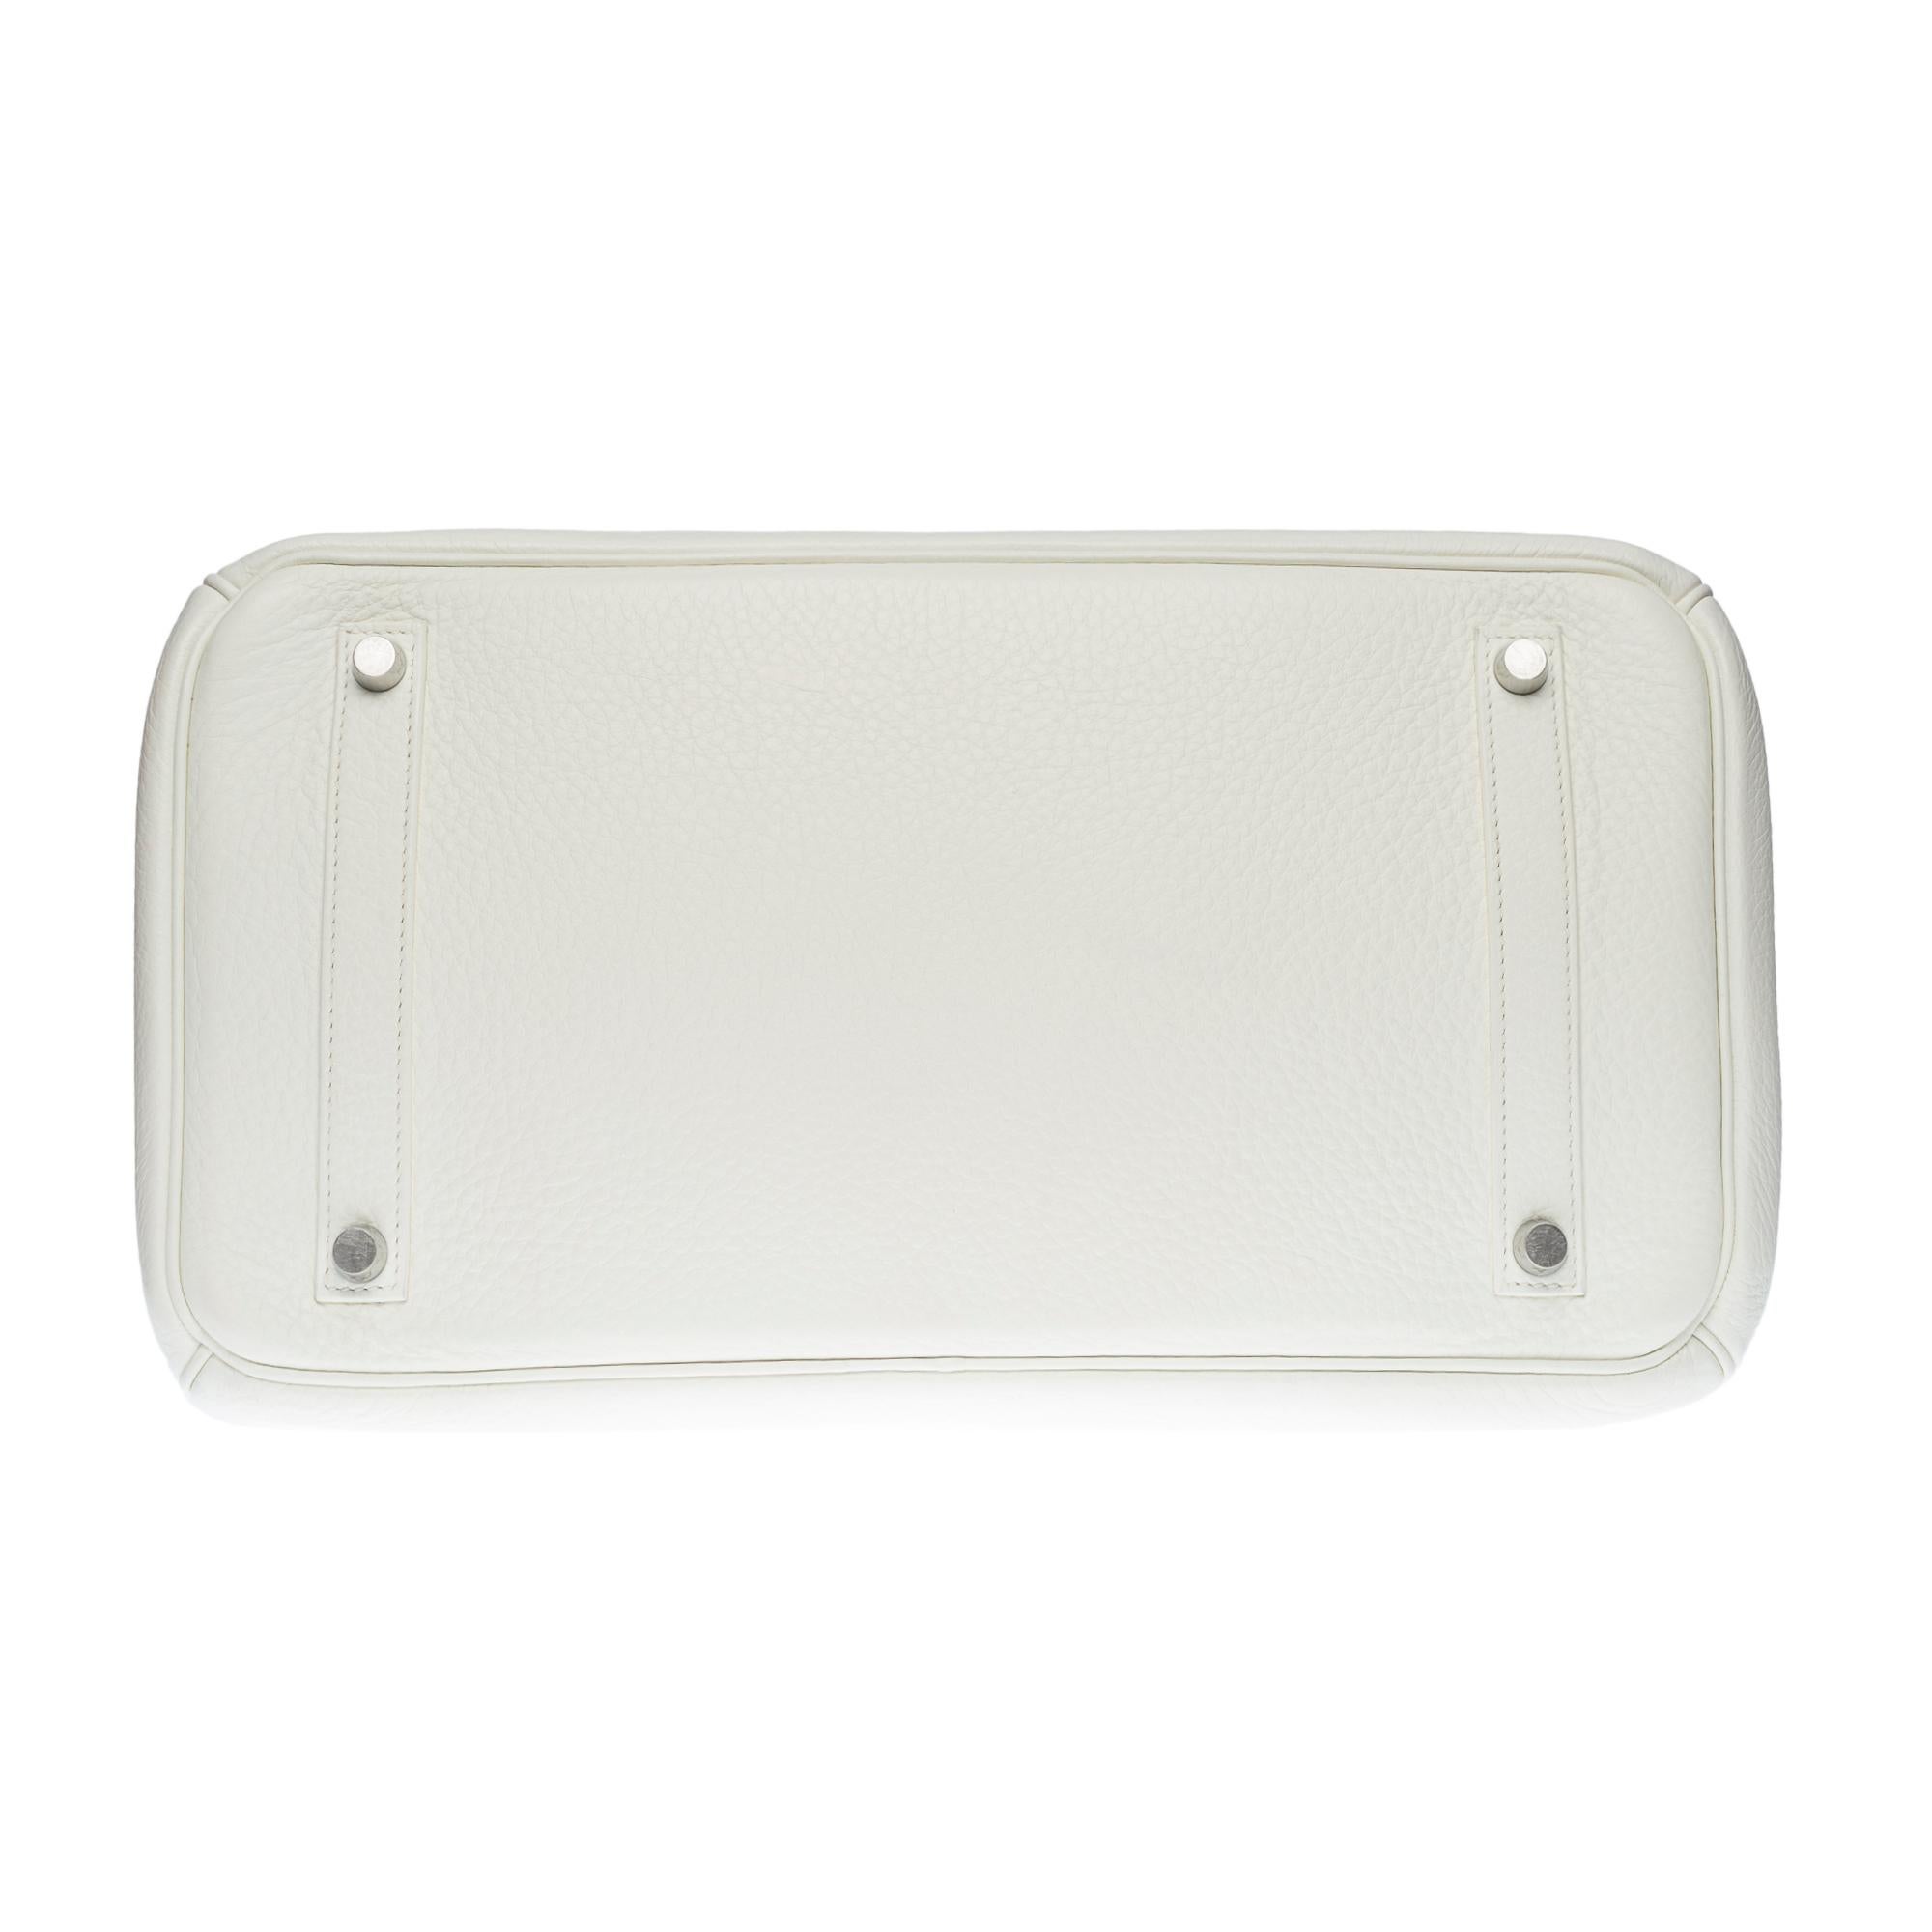 Stunning Hermès Birkin 35 handbag in white Togo leather, SHW 6